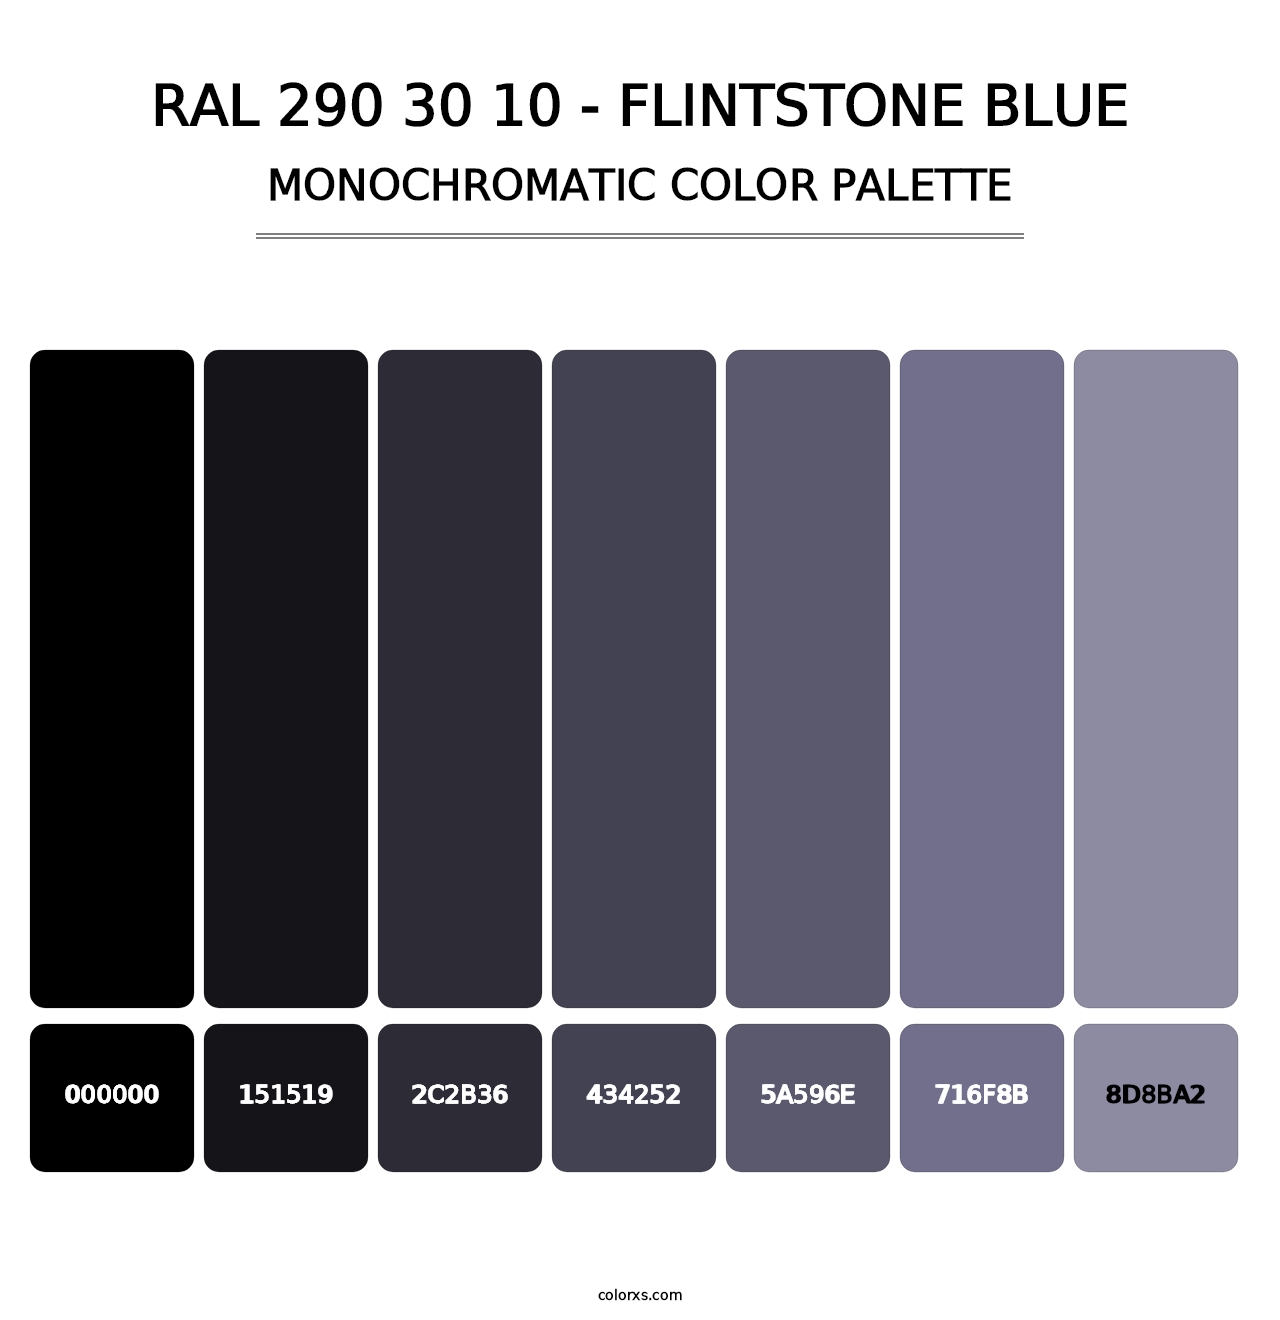 RAL 290 30 10 - Flintstone Blue - Monochromatic Color Palette